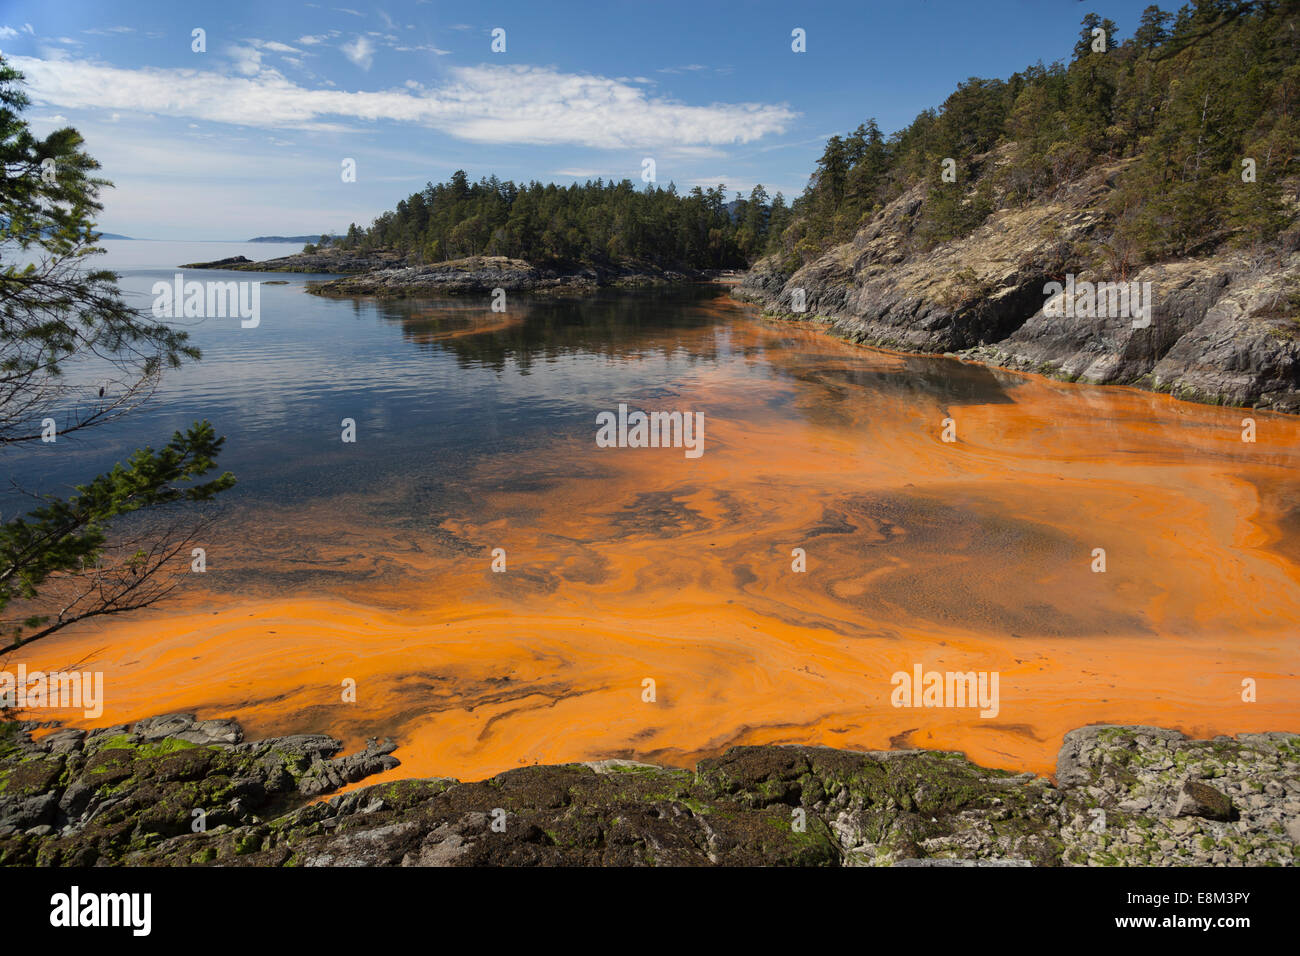 Floración de algas en el océano. En Sechelt en Columbia Británica en la costa oeste de Canadá una concentración de algas hace el agua naranja. Foto de stock